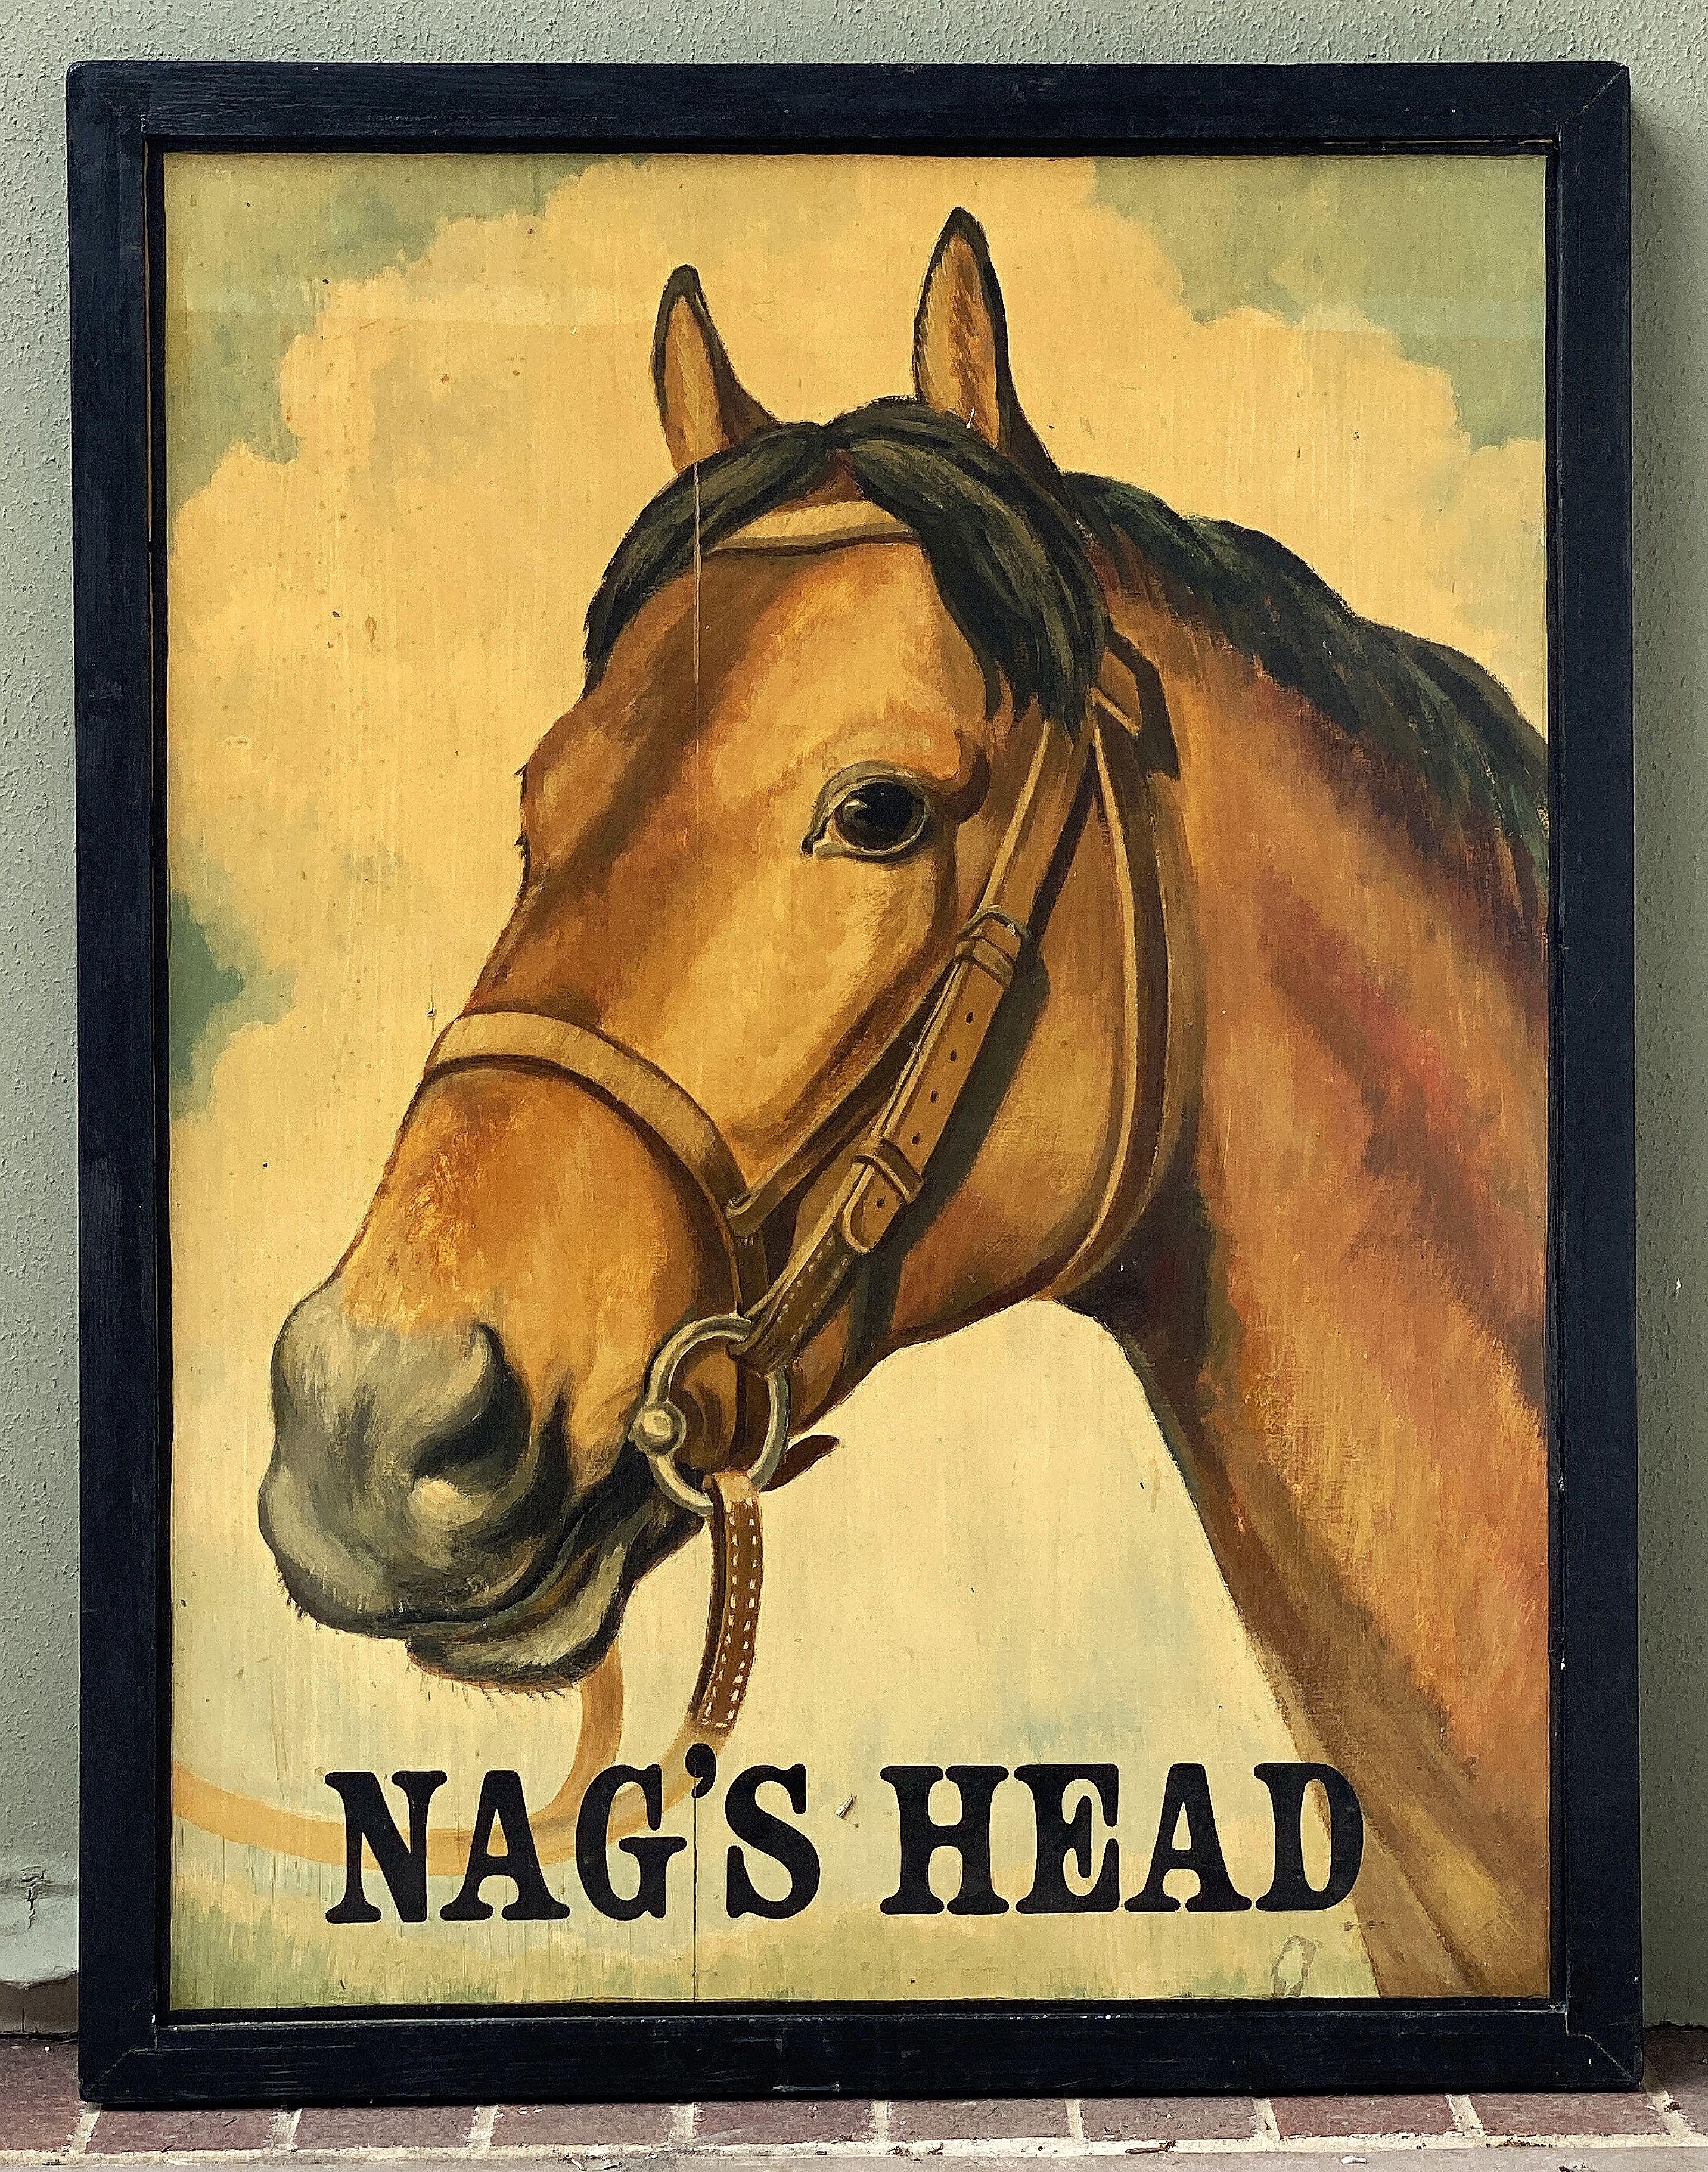 Ein authentisches englisches Pub-Schild (einseitig) mit dem Bild eines Pferdekopfes in einem Zaumzeug mit dem Titel: Nag's Head.

Ein sehr schönes Beispiel für eine alte Werbegrafik, bereit für die Ausstellung.